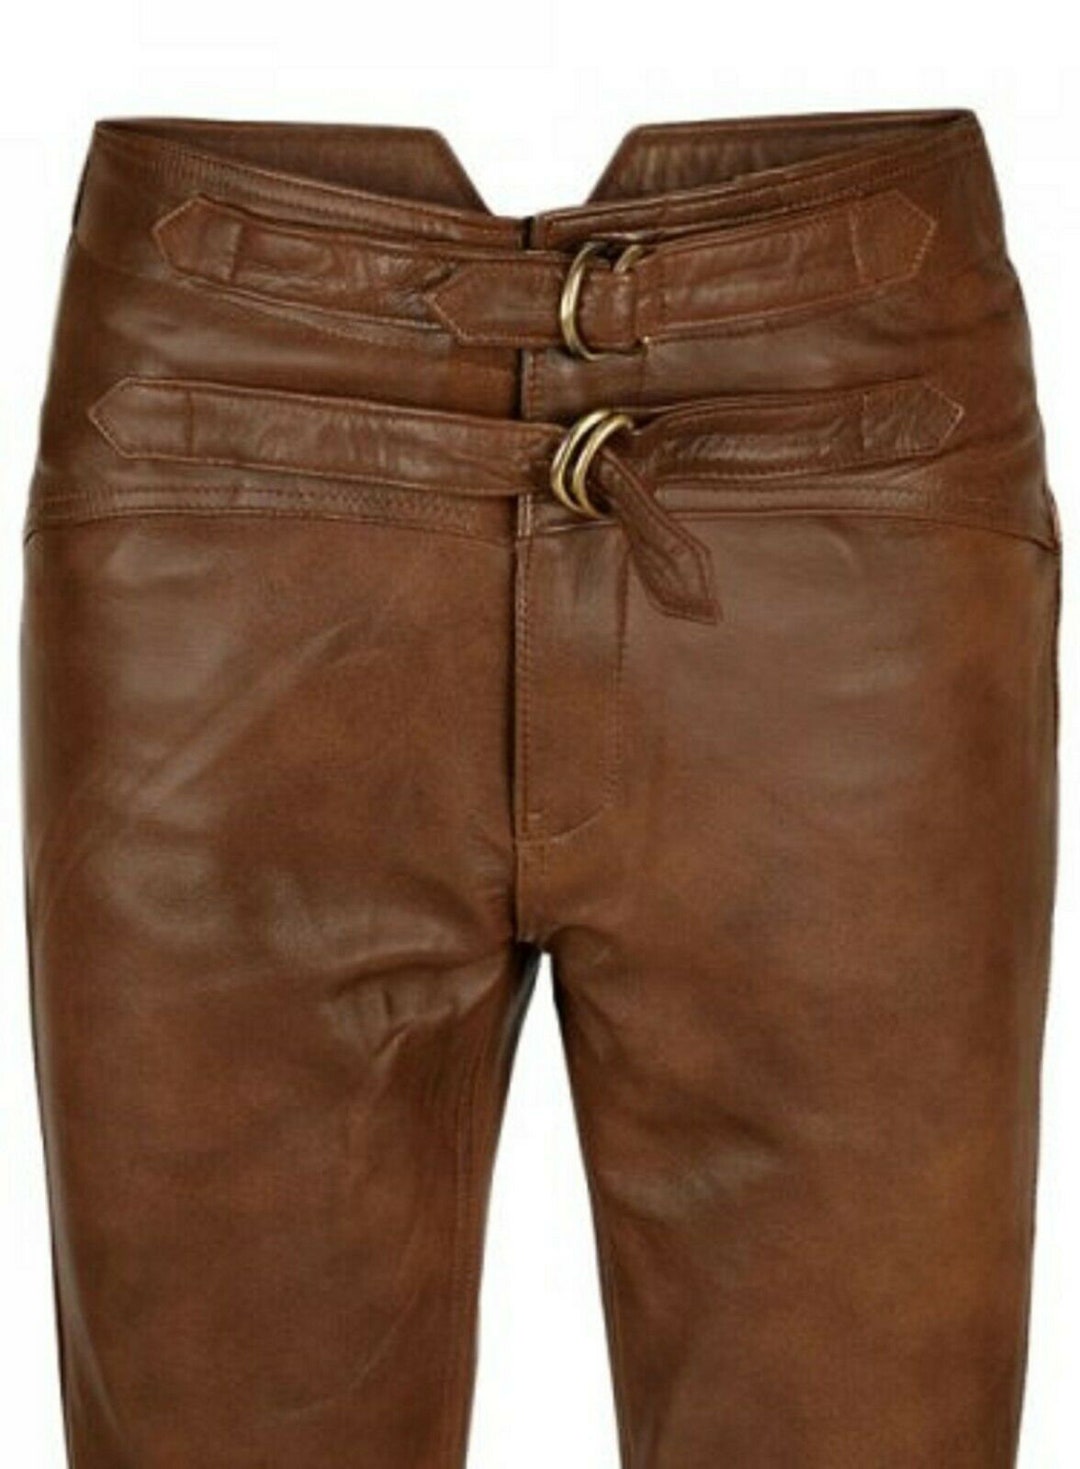 Men's Brown Leather Jeans Pants Trouser Premium Quality Cow Plain ...